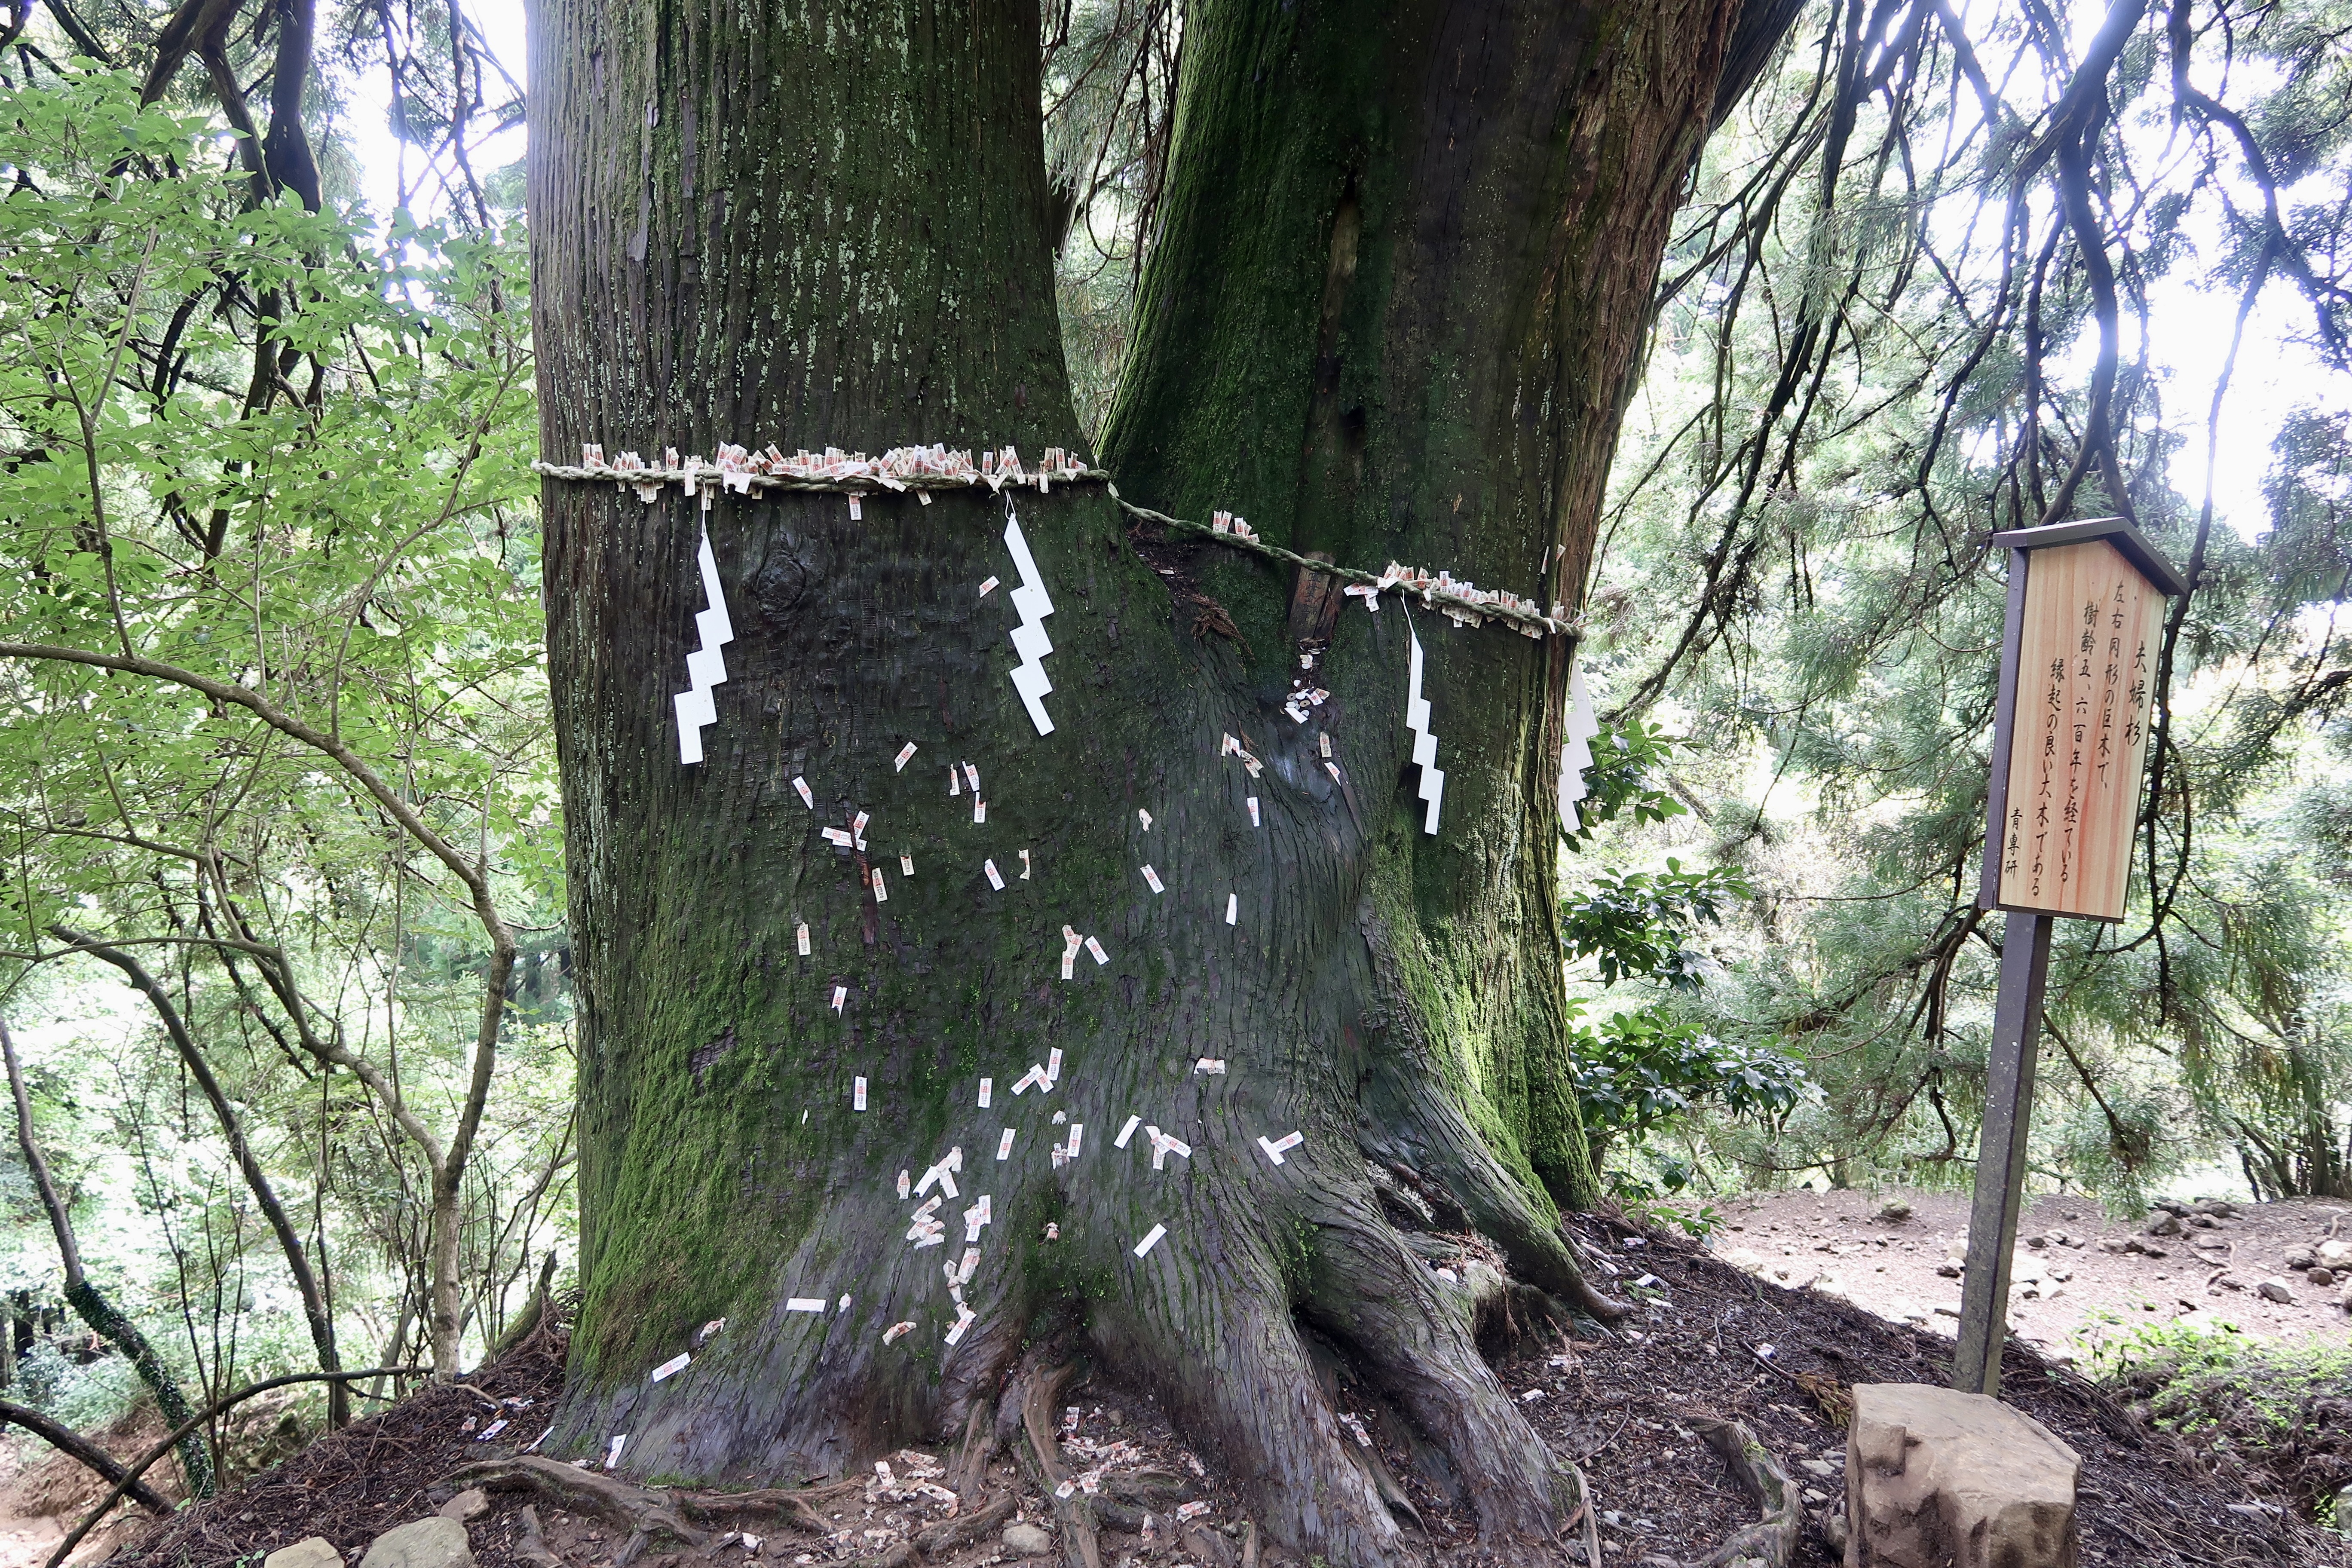 머토 스기라는 이름의 신성한 나무, 또는 삼나무